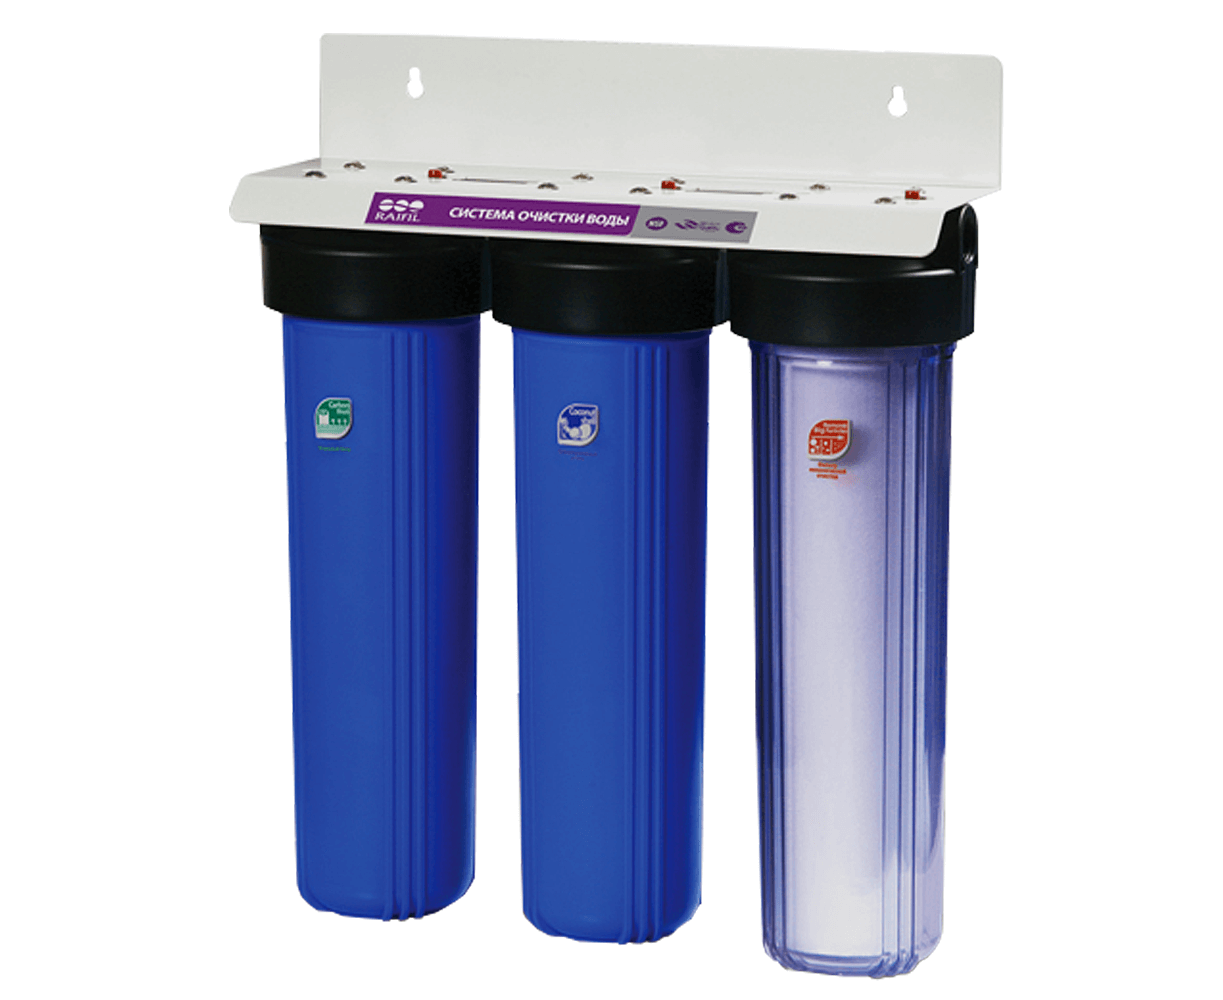 Ресурс фильтра для воды. Проточный фильтр RAIFIL PU 908b3-bk1-s-g. Магистральный фильтр bb20 АКВАВИК 1". Фильтр трехступенчатый RAIFIL для воды.